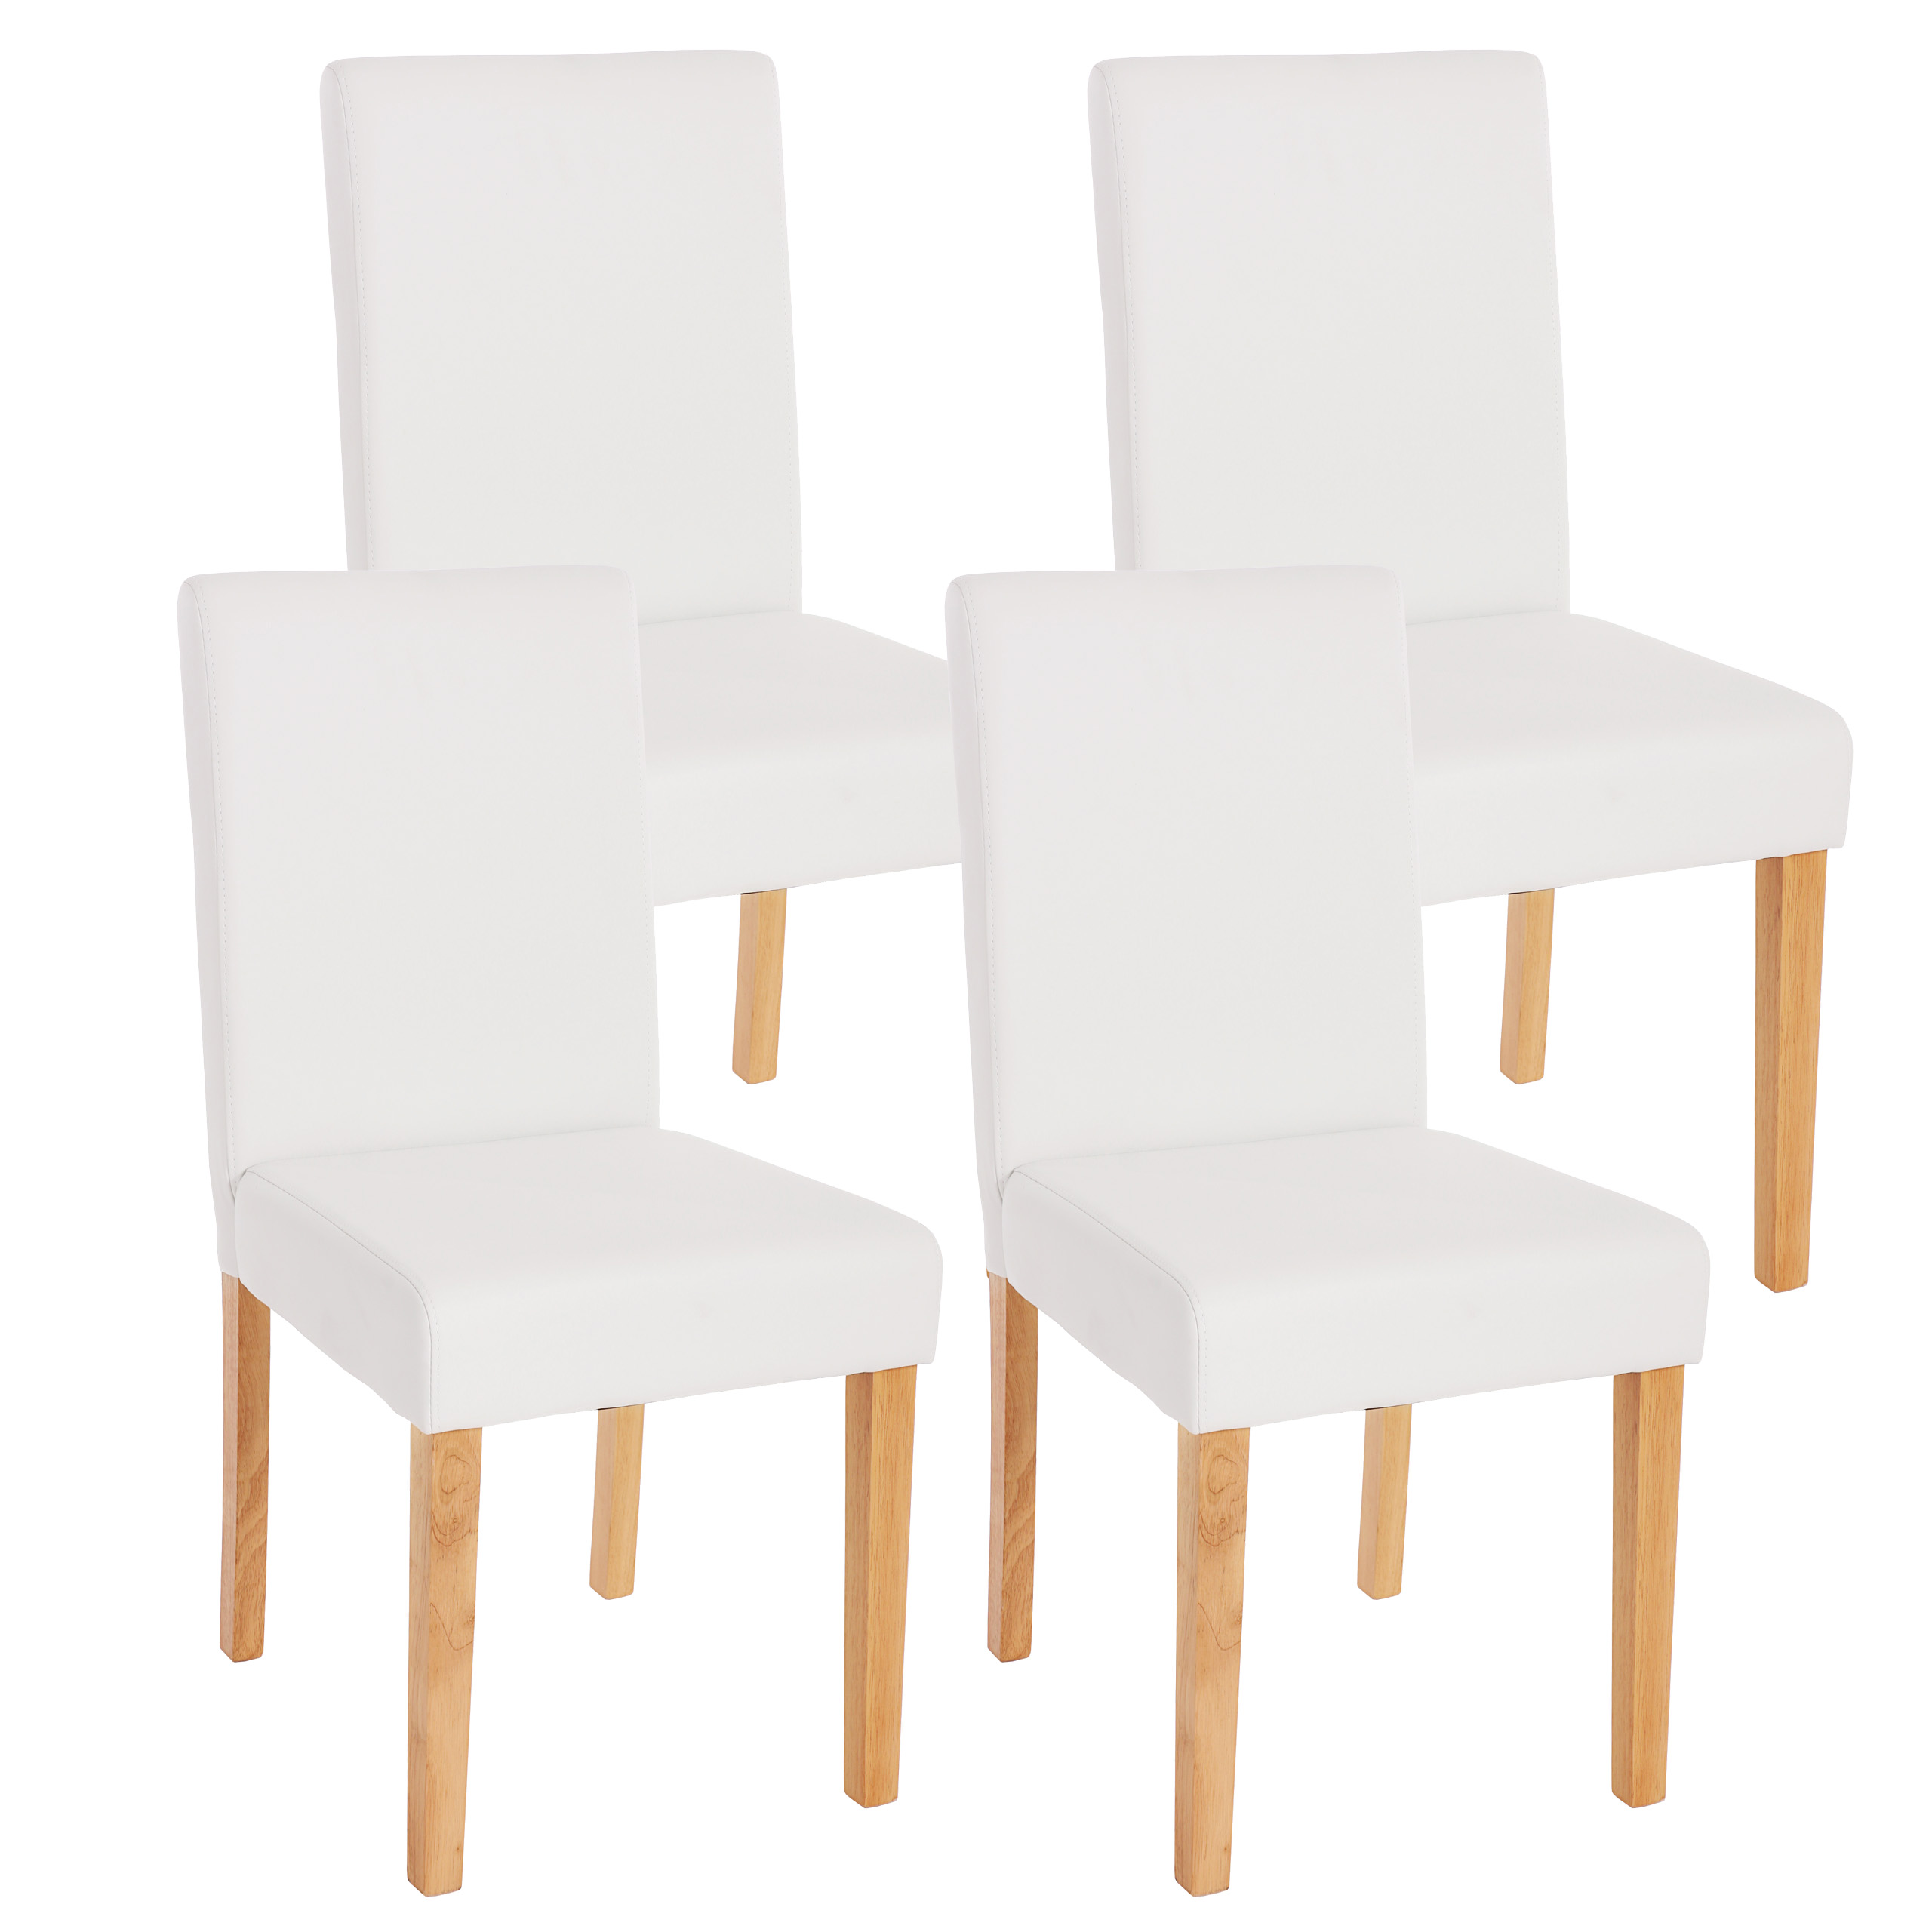 4er-Set Esszimmerstuhl Stuhl Küchenstuhl Littau Kunstleder, von matt, weiß helle Heute-Wohnen Beine 